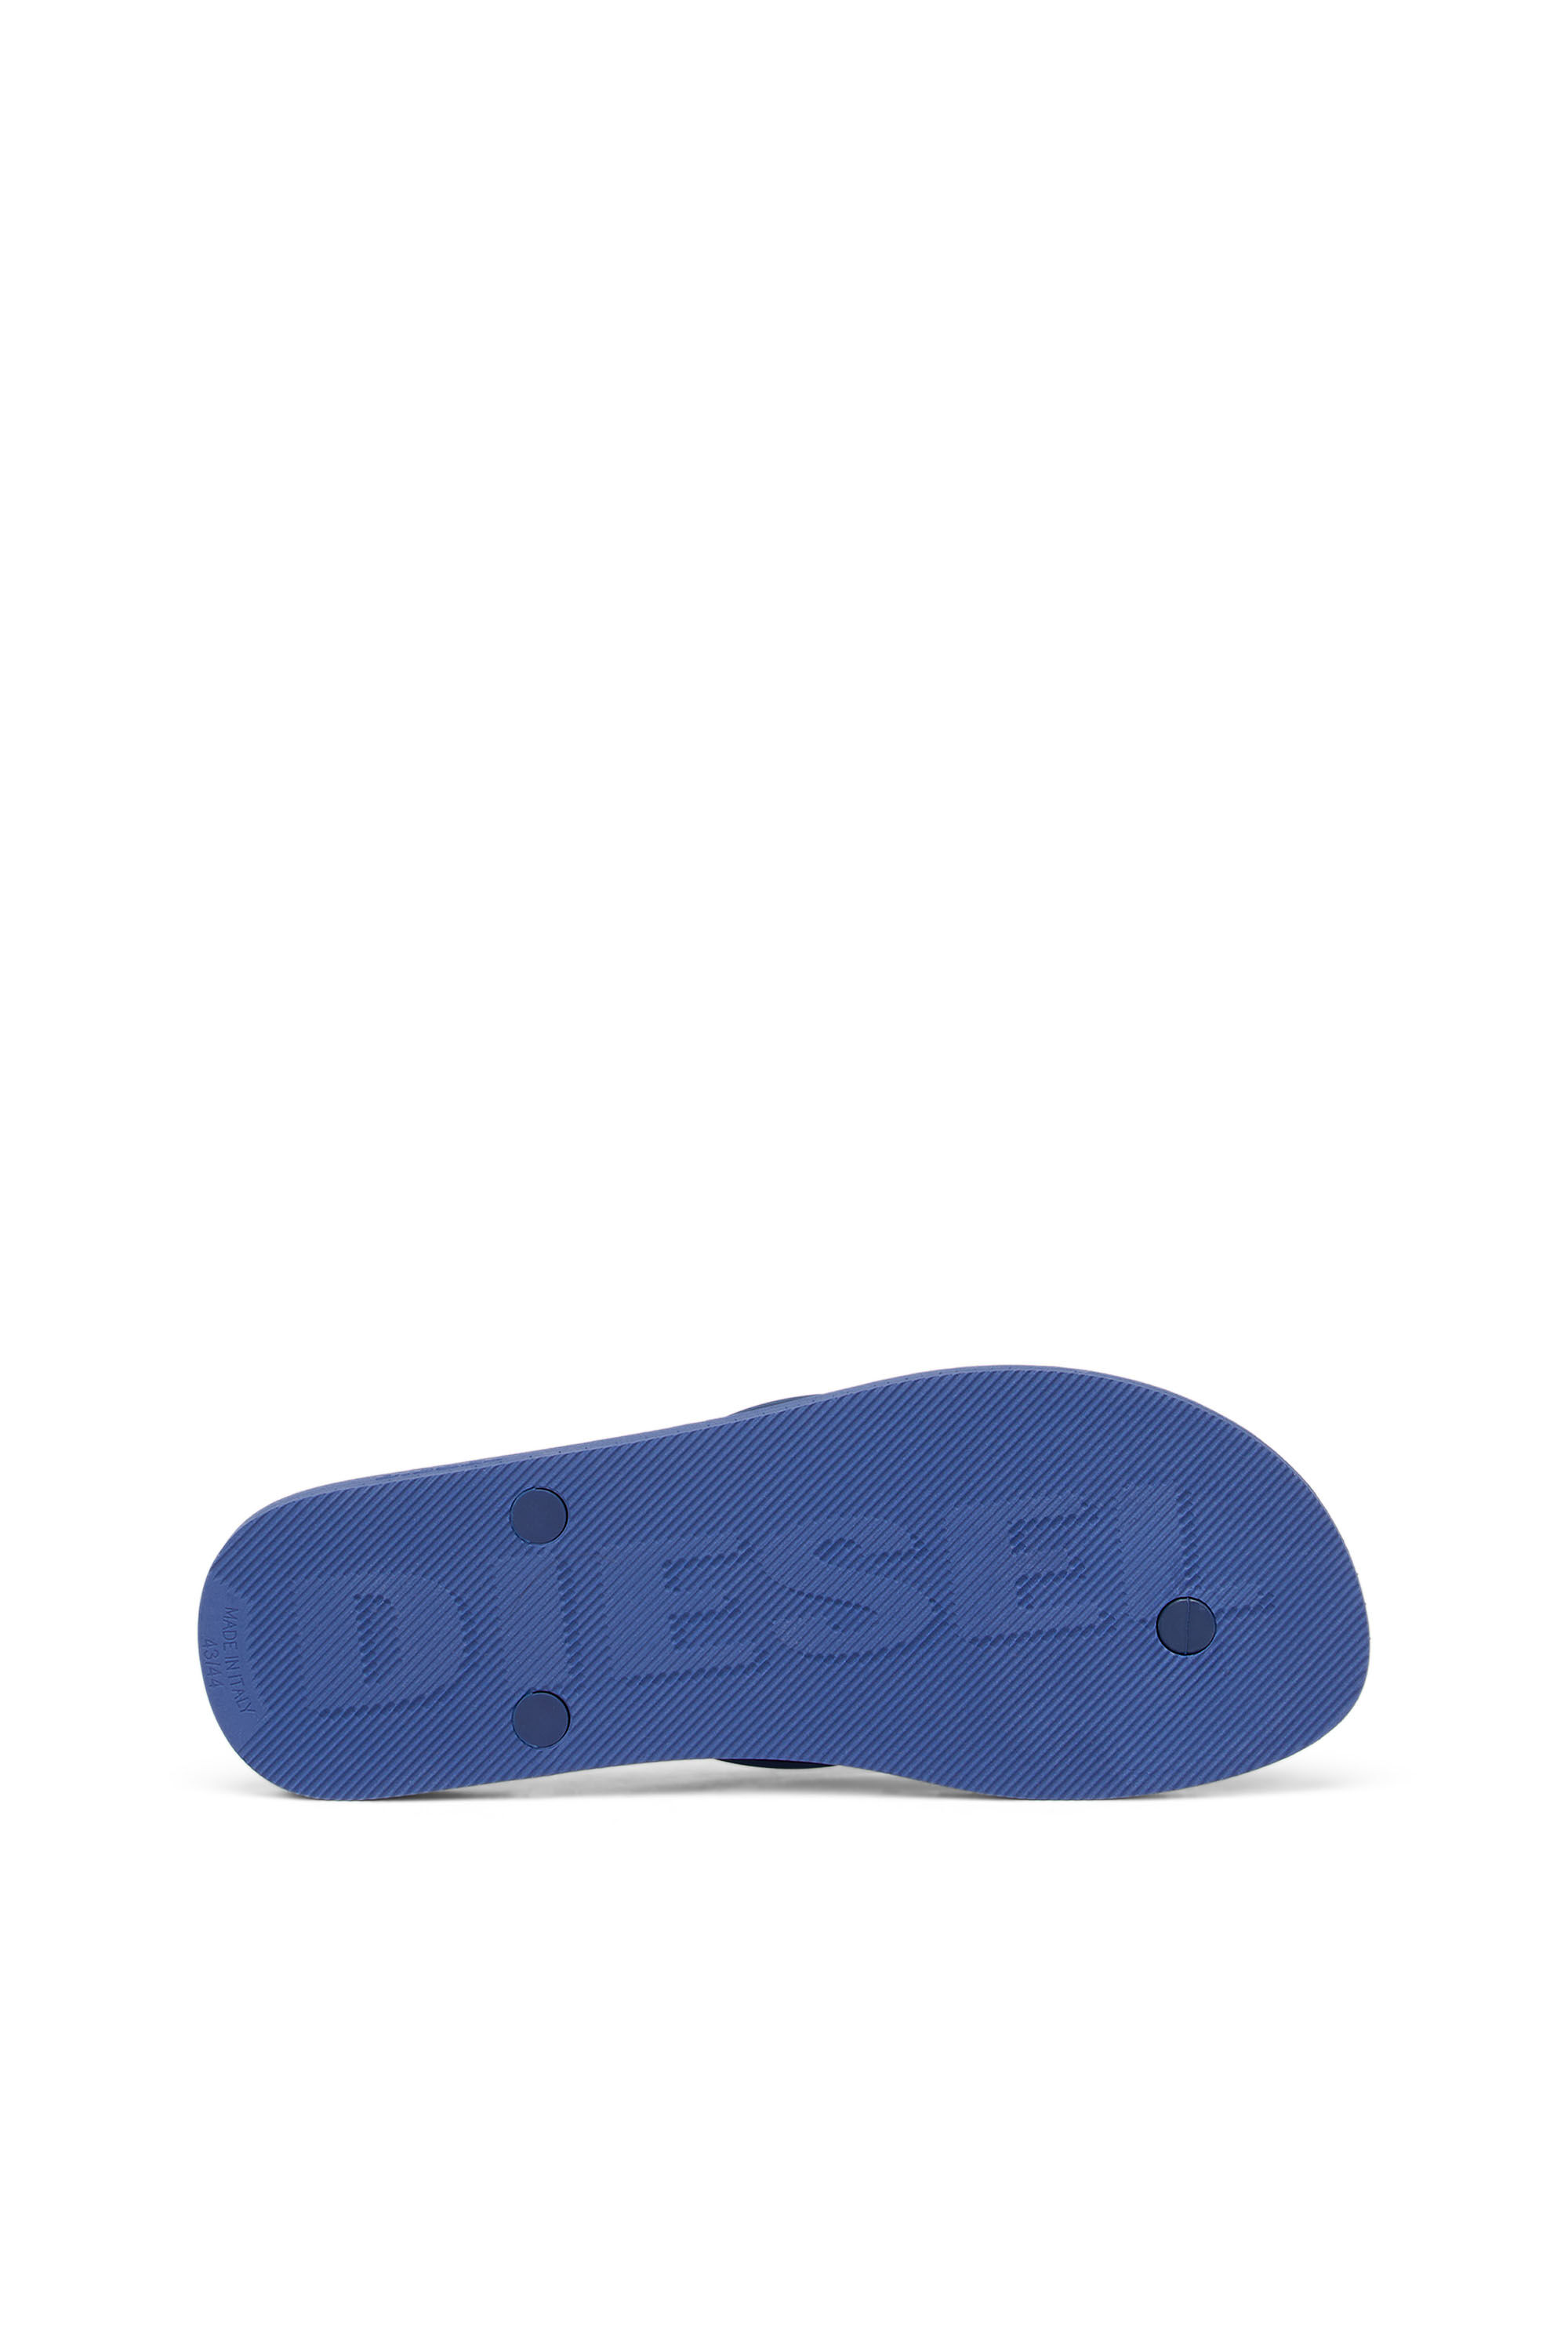 Diesel - SA-KAUAY NL, Blau - Image 5